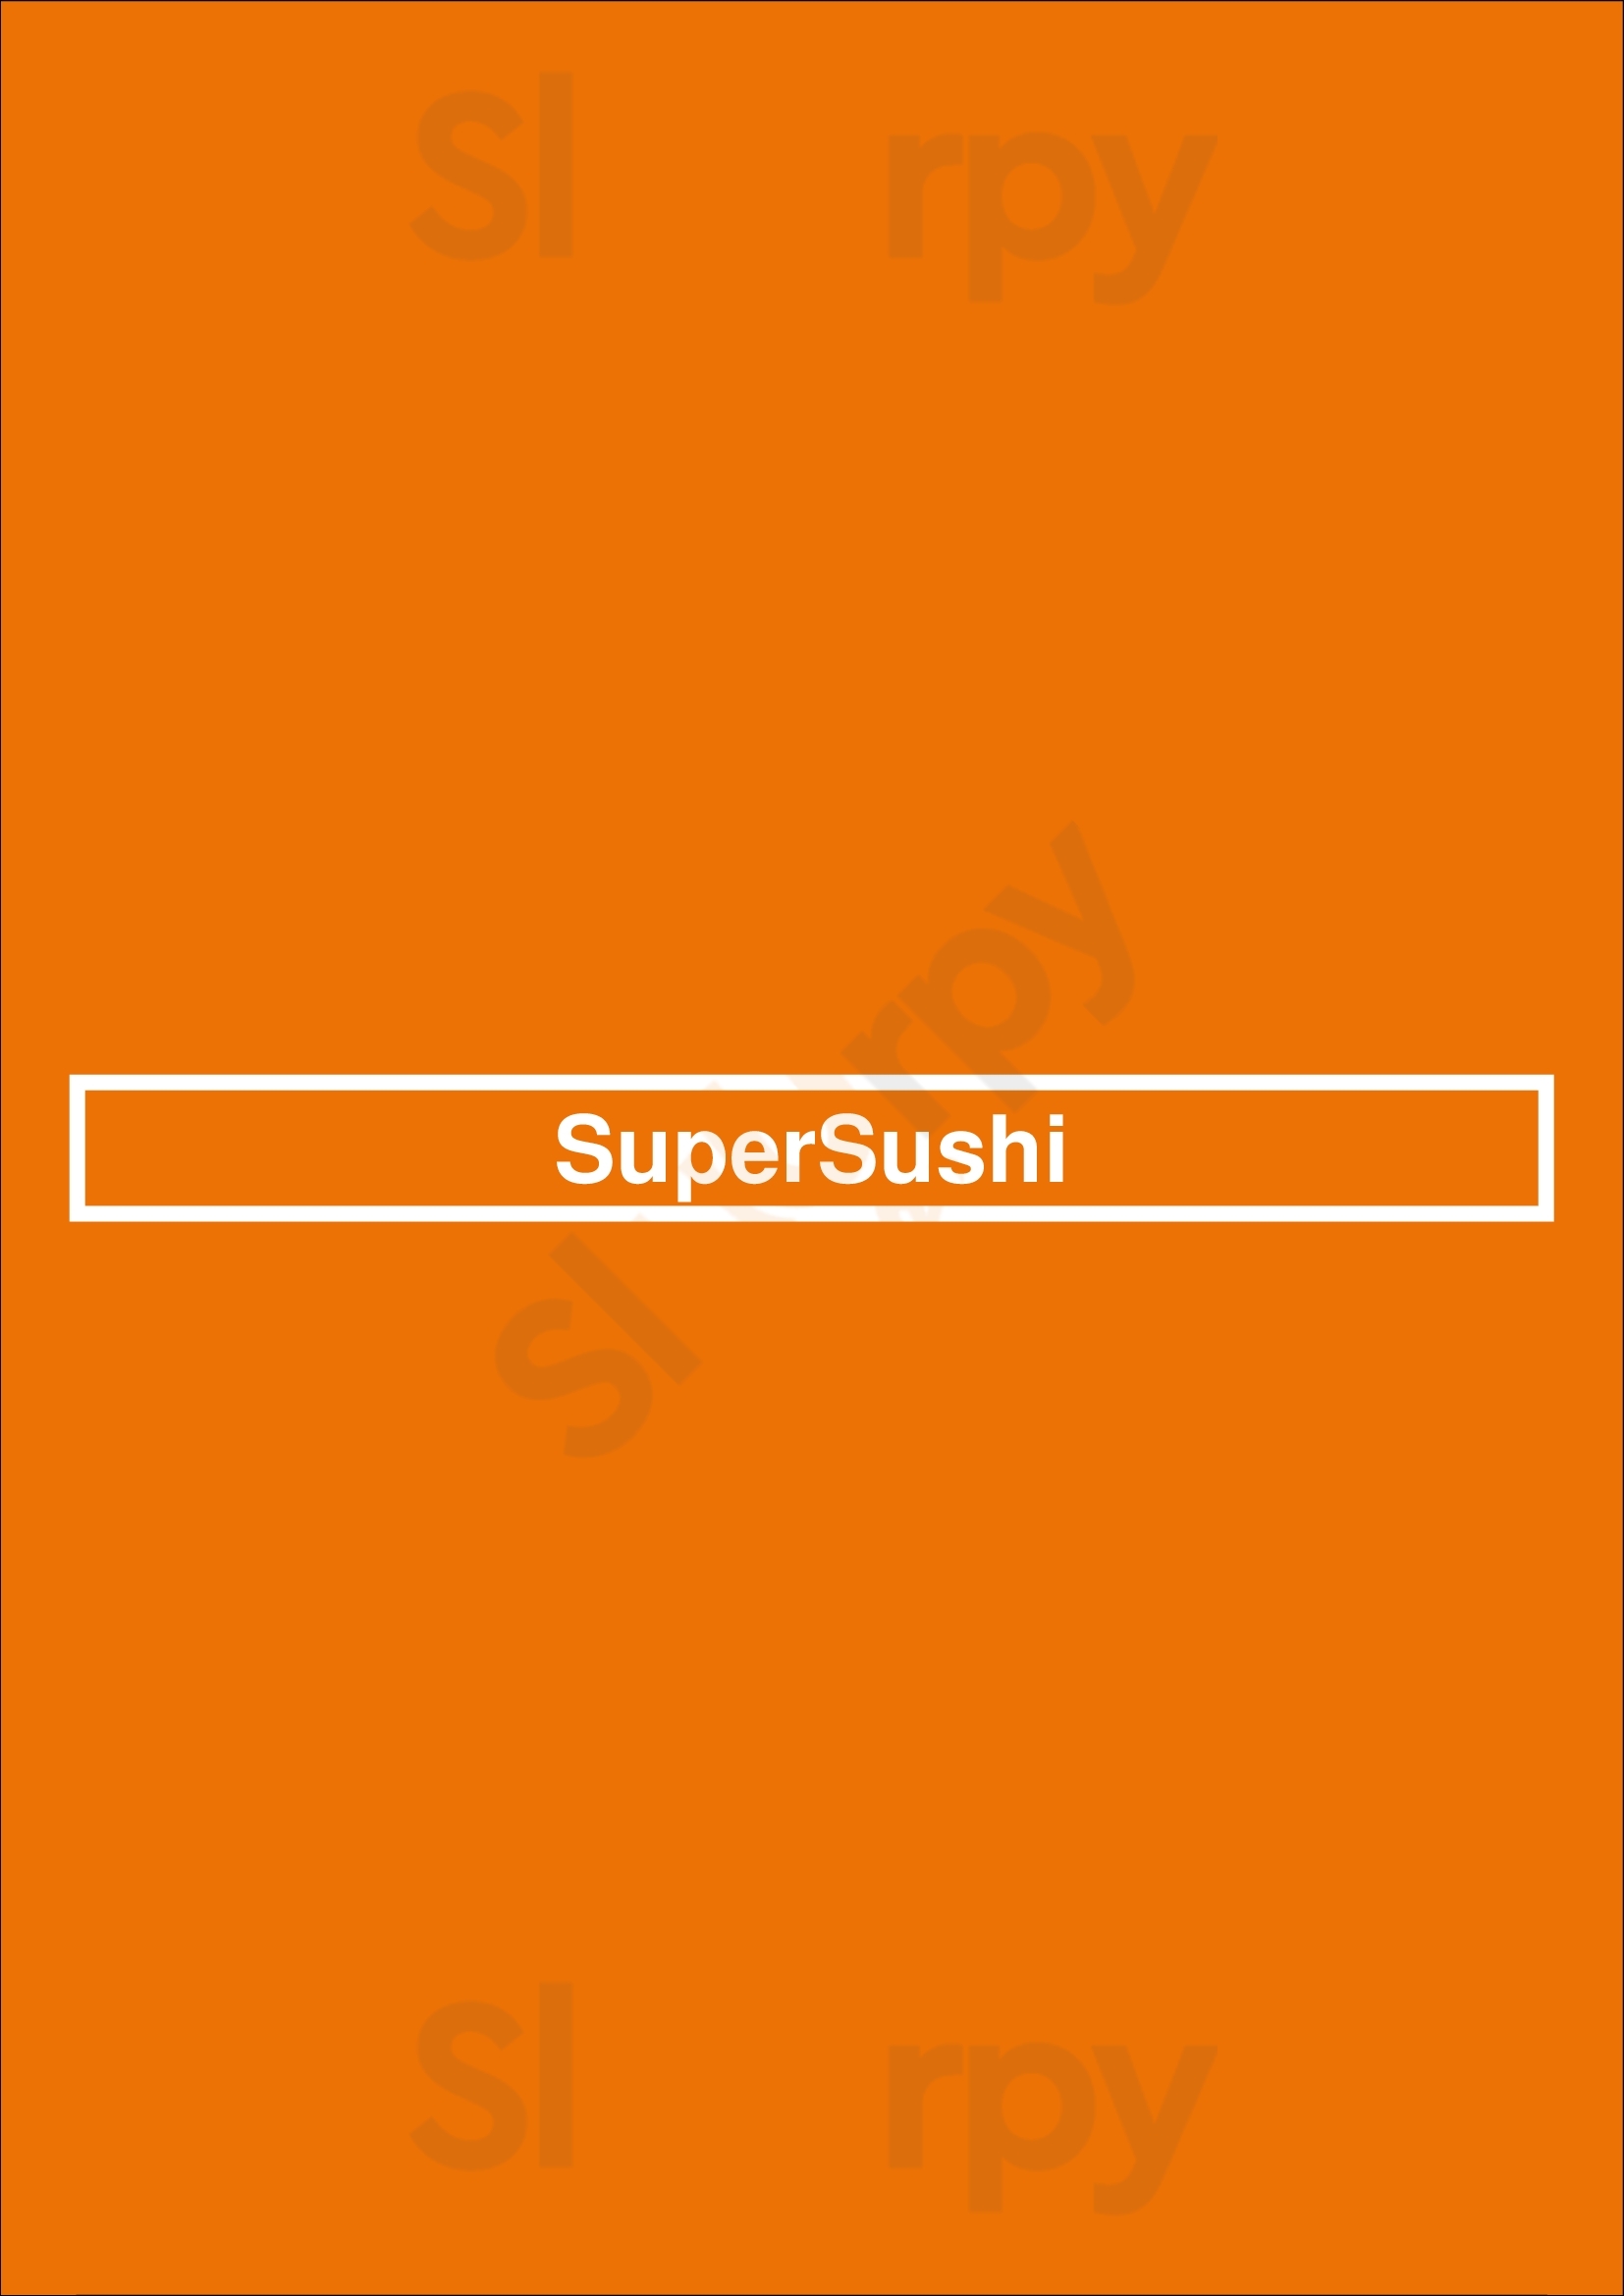 Supersushi Las Vegas Menu - 1